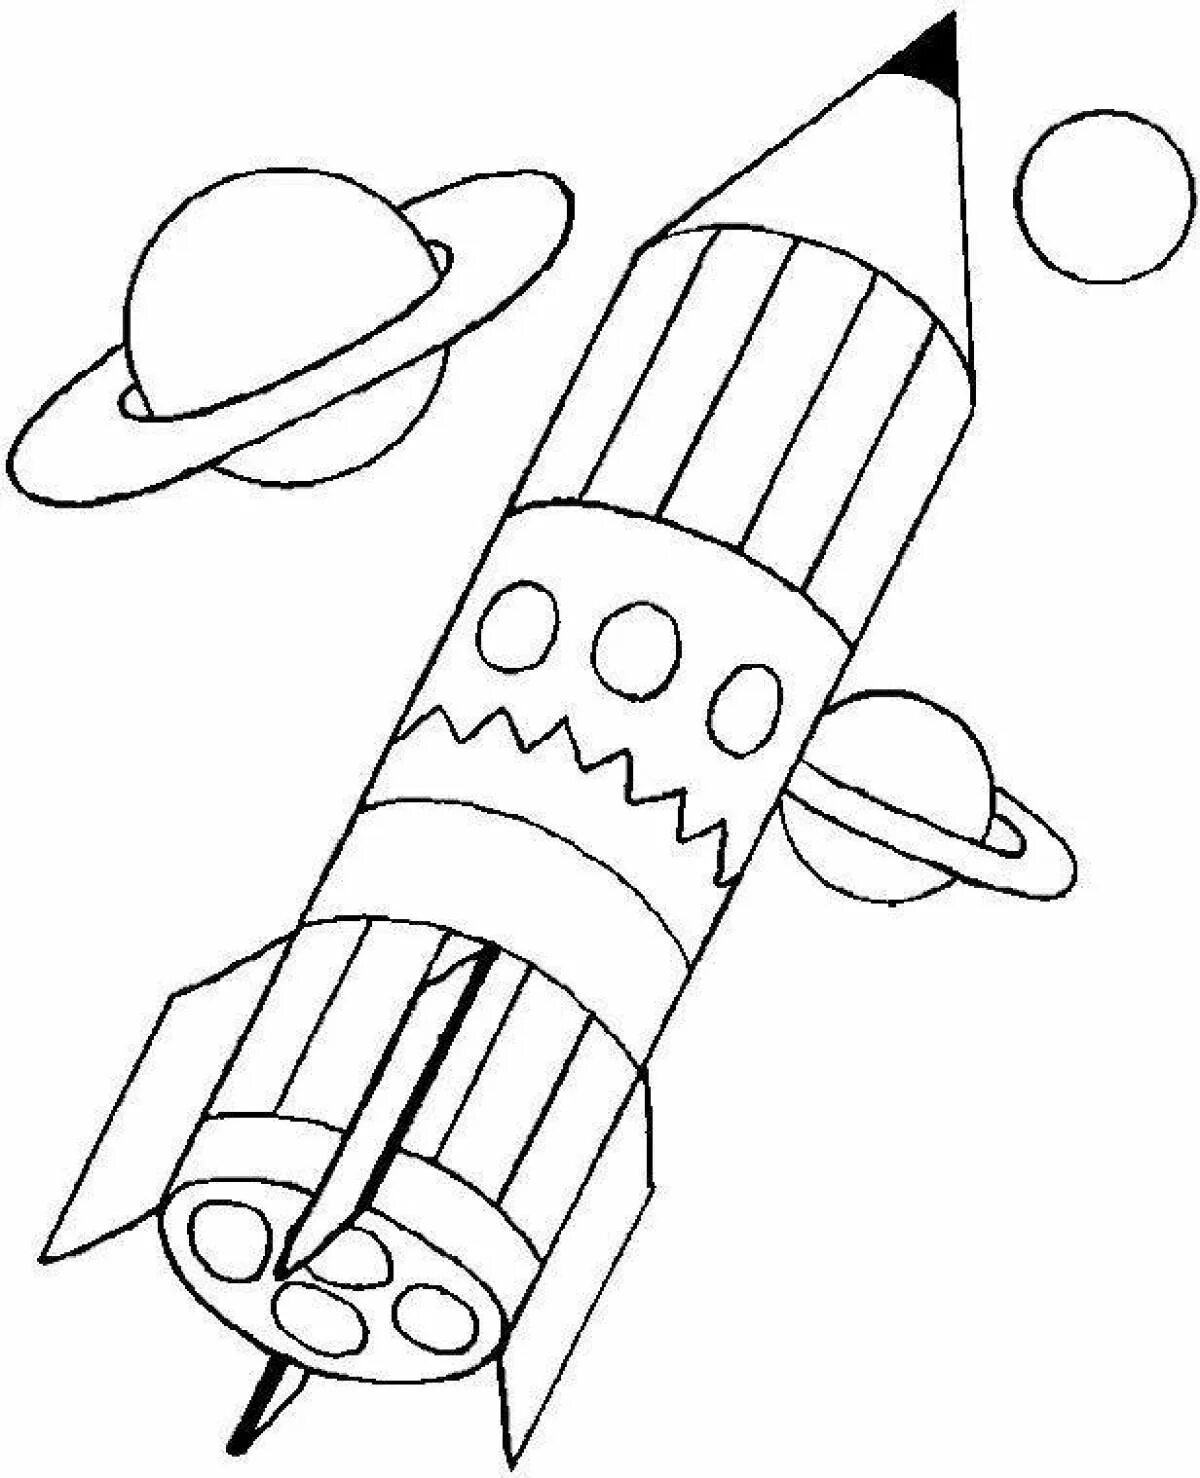 Ракета раскраска. Ракета раскраска для детей. Космическая ракета раскраска. Ракета эскиз. Ракета раскраска для малышей